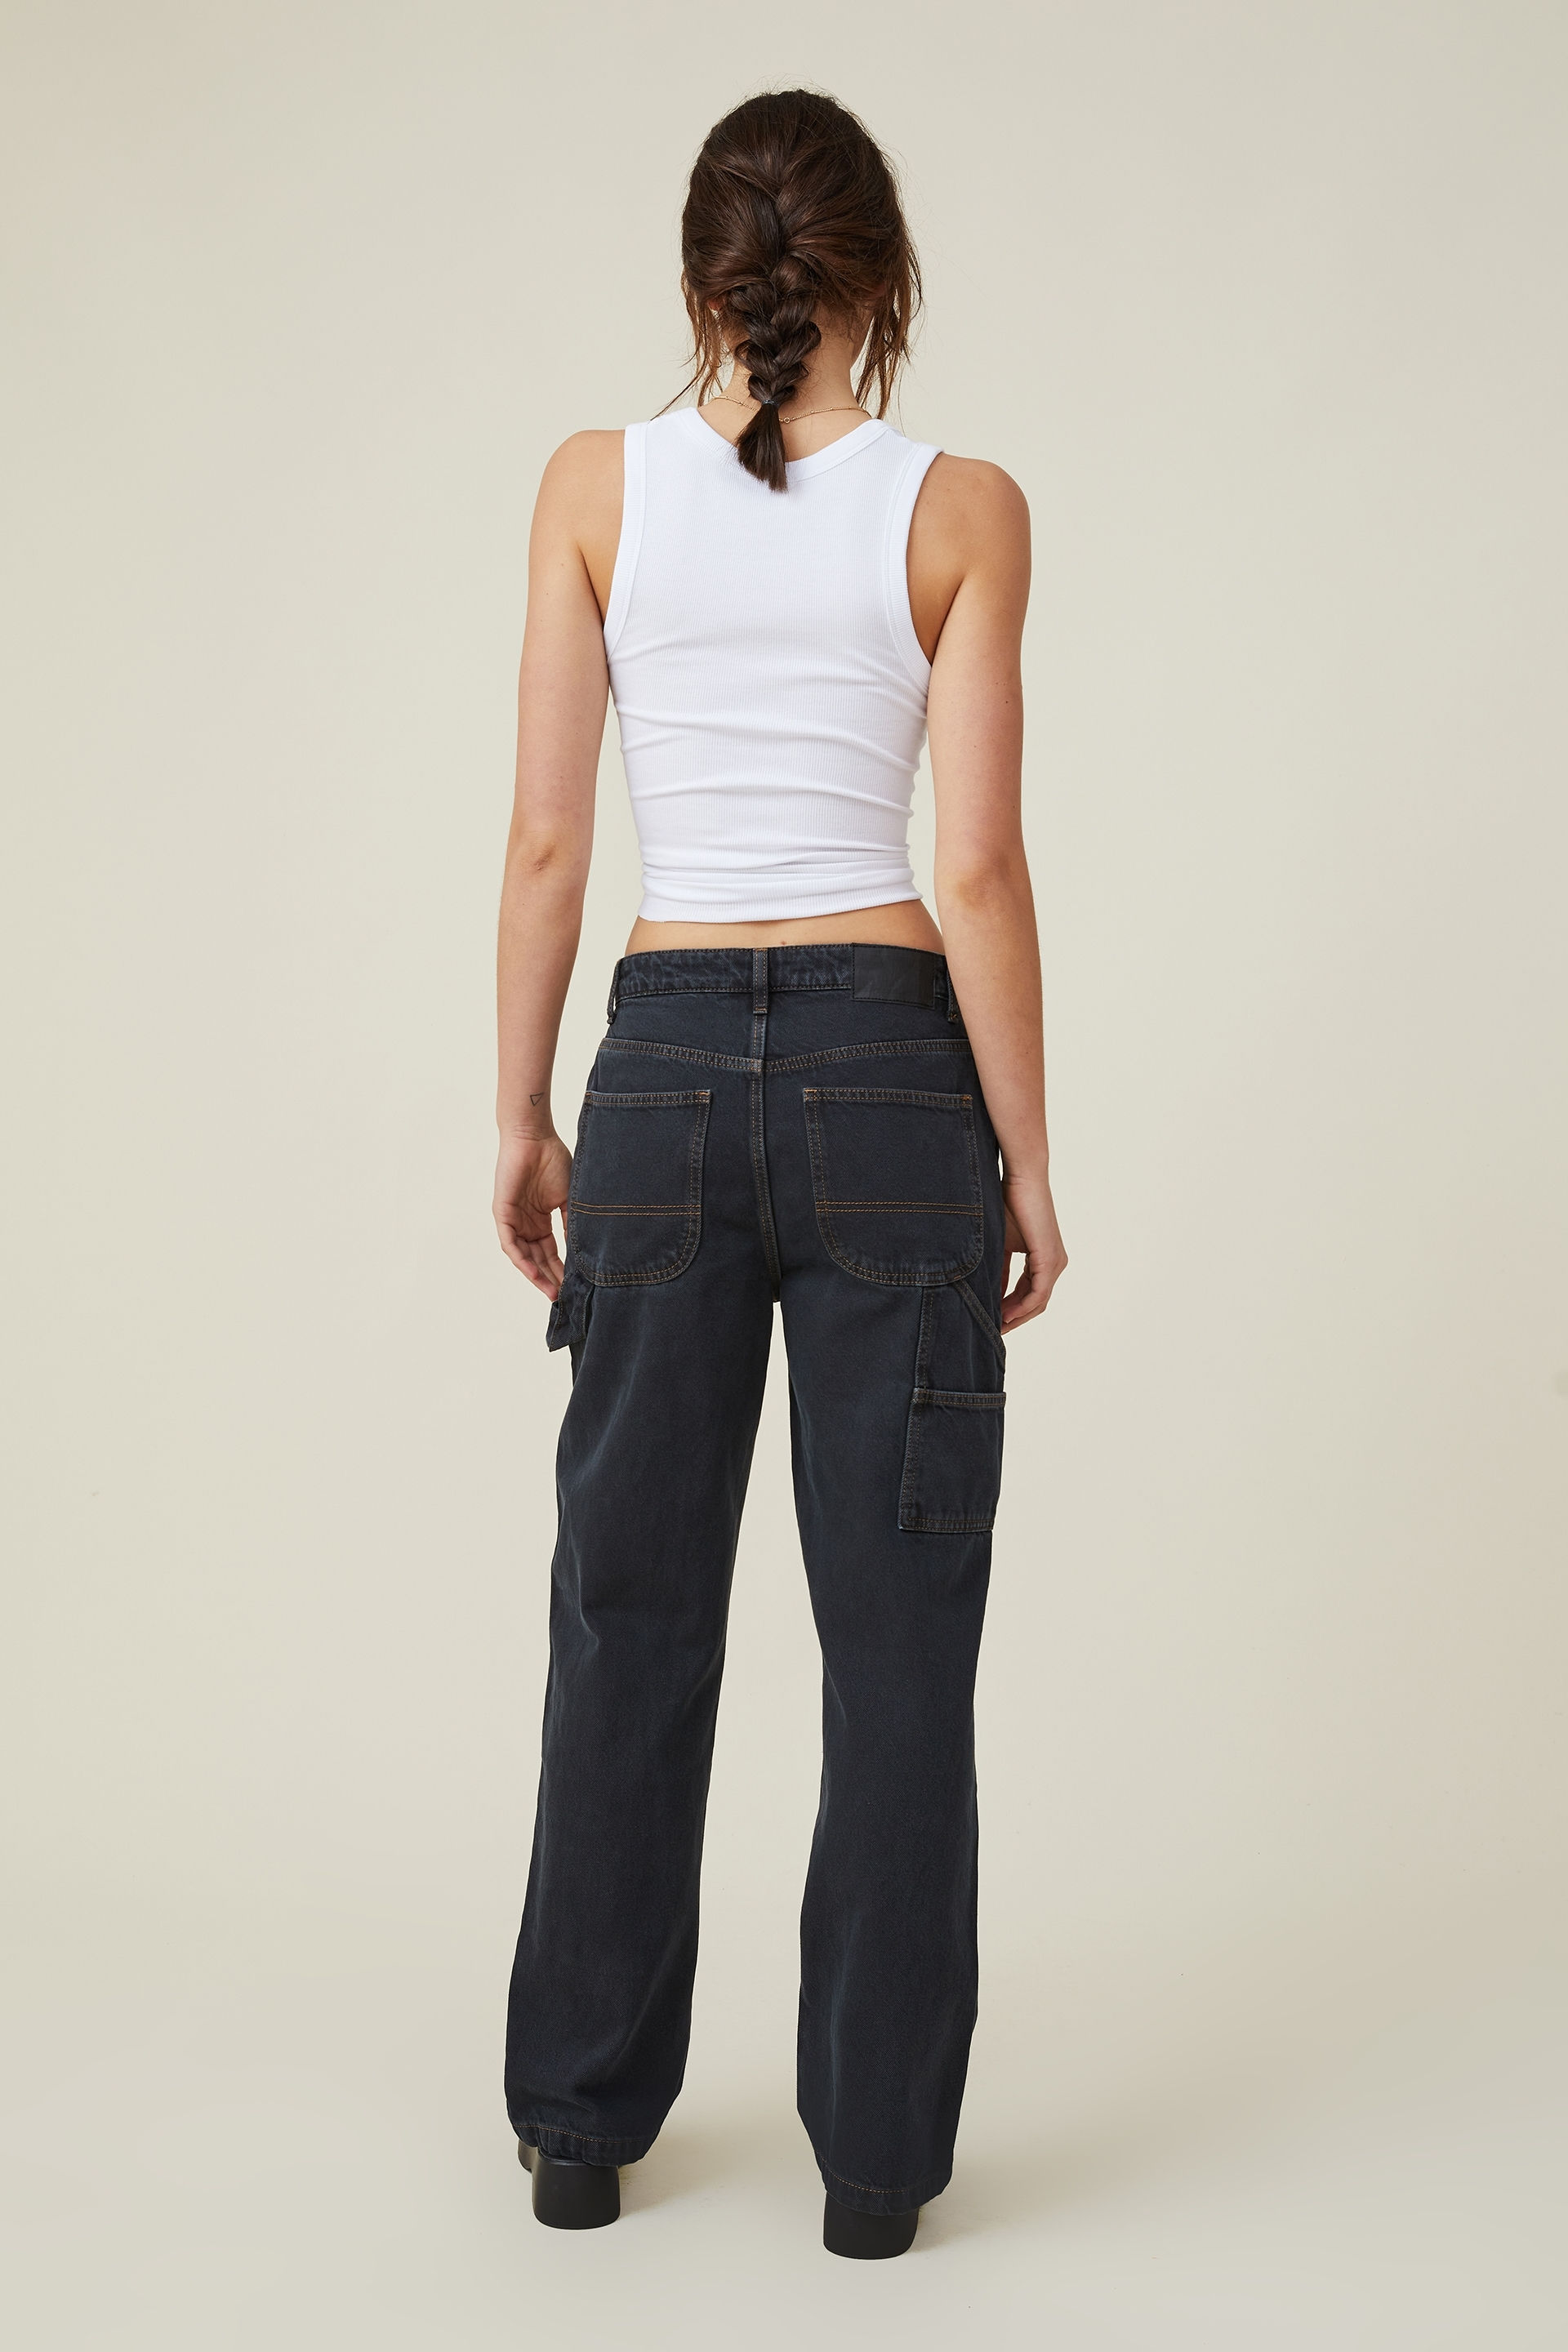 Baggy carpenter jeans - Pants - Women